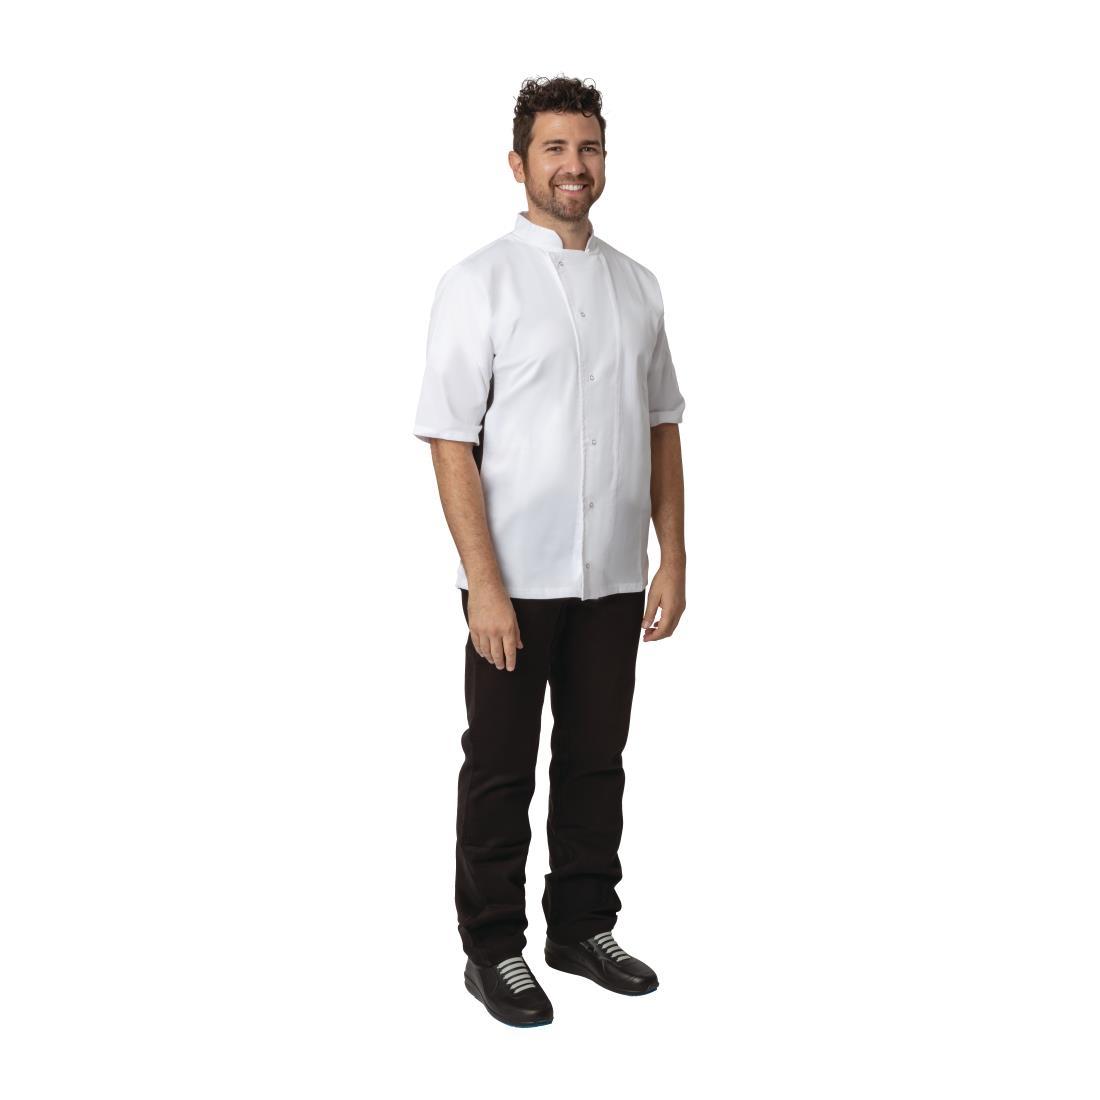 Whites Nevada Unisex Chefs Jacket Short Sleeve Black and White M - A928-M  - 1